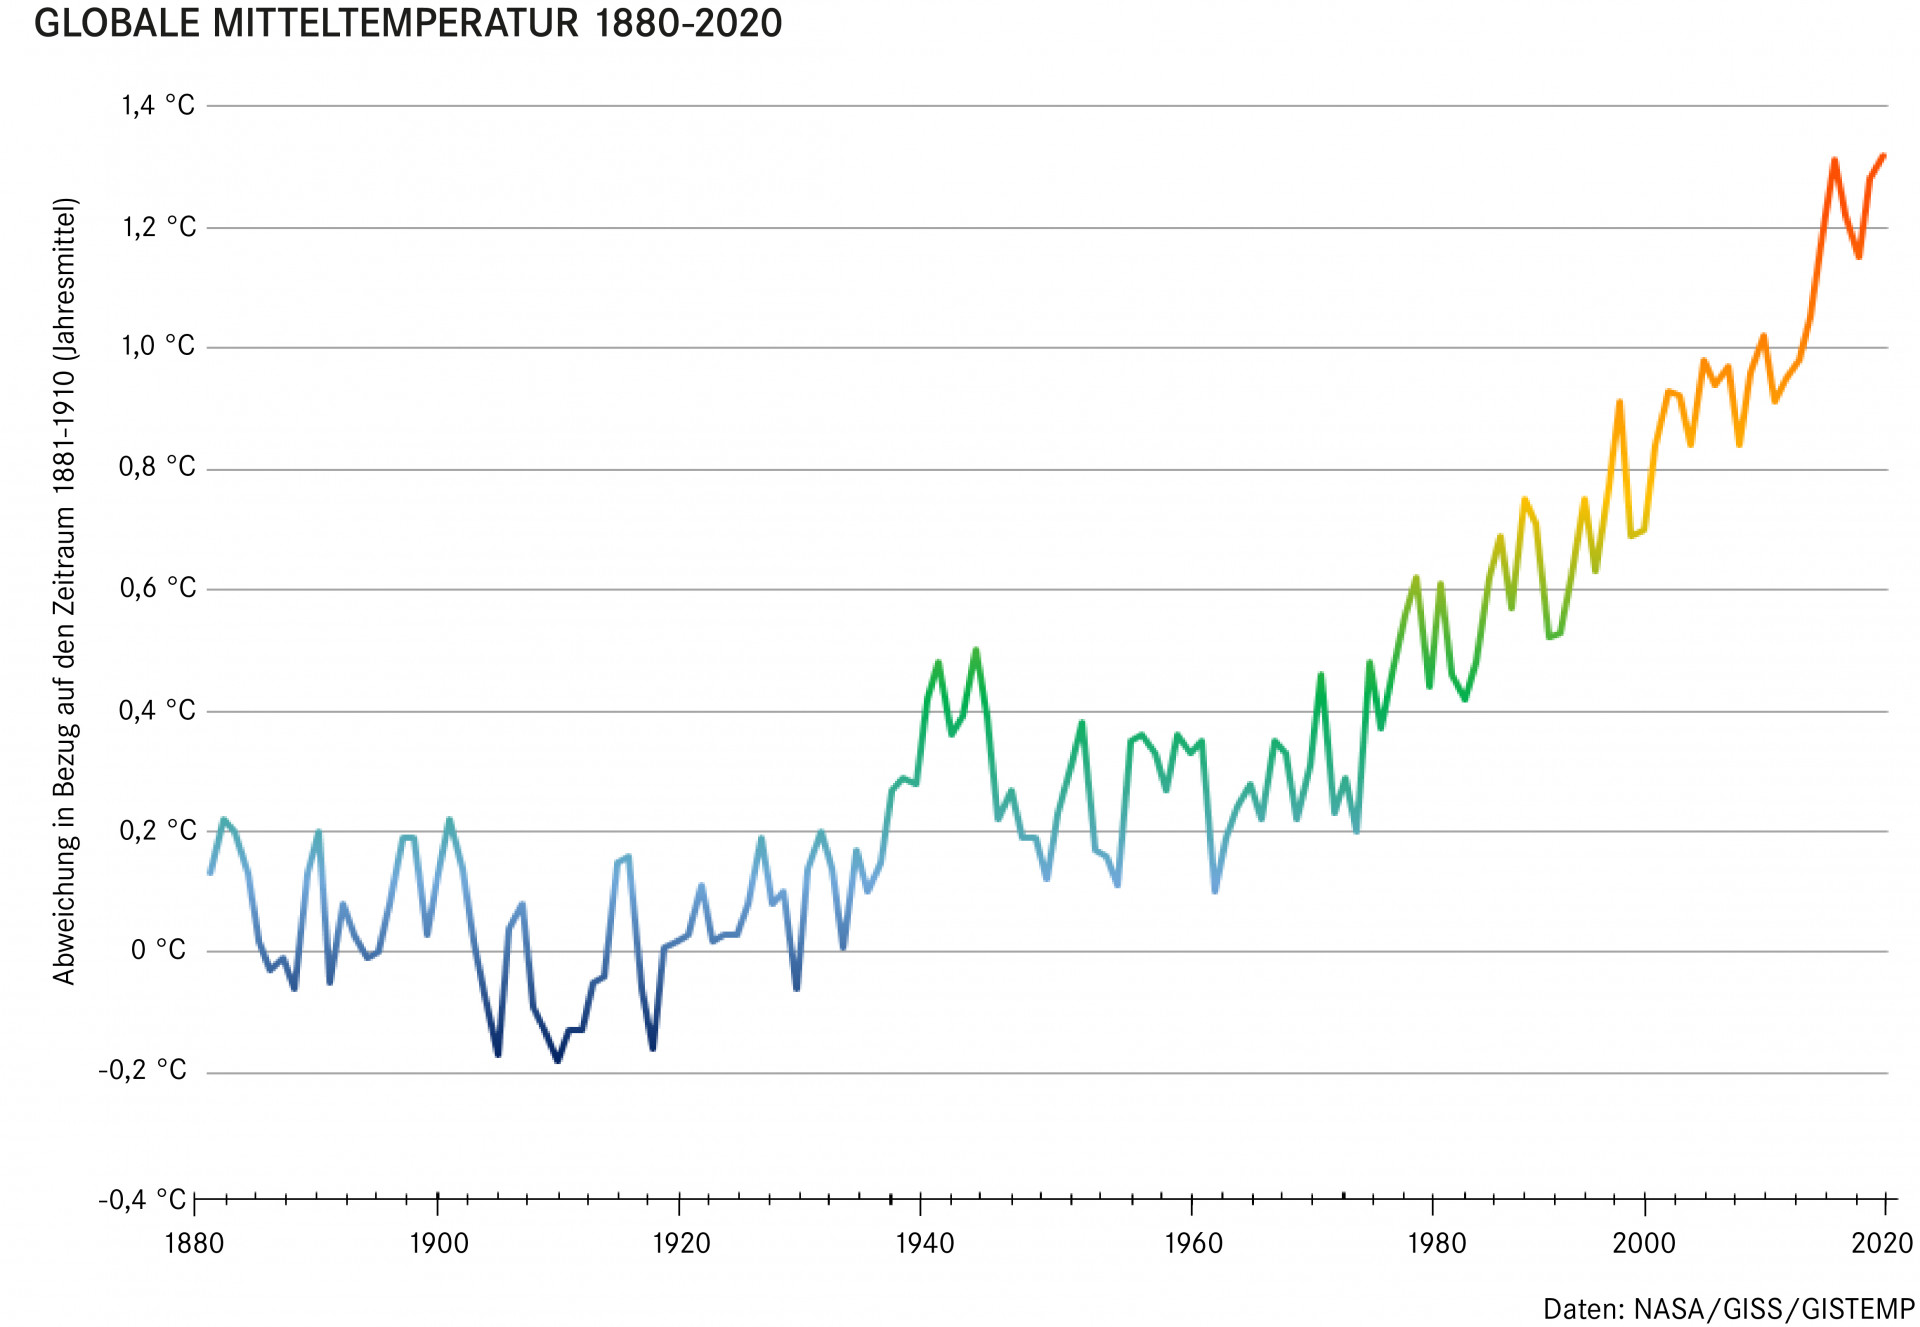 Wärmekurve der globalen Mitteltemperatur zeigt die Abweichung zum Durchschnitt von 1881-1910. Die Kurve steigt fast kontinuierlich von + 0,1 Grad in 1880 auf knapp + 1,3 Grad Celsius in 2020